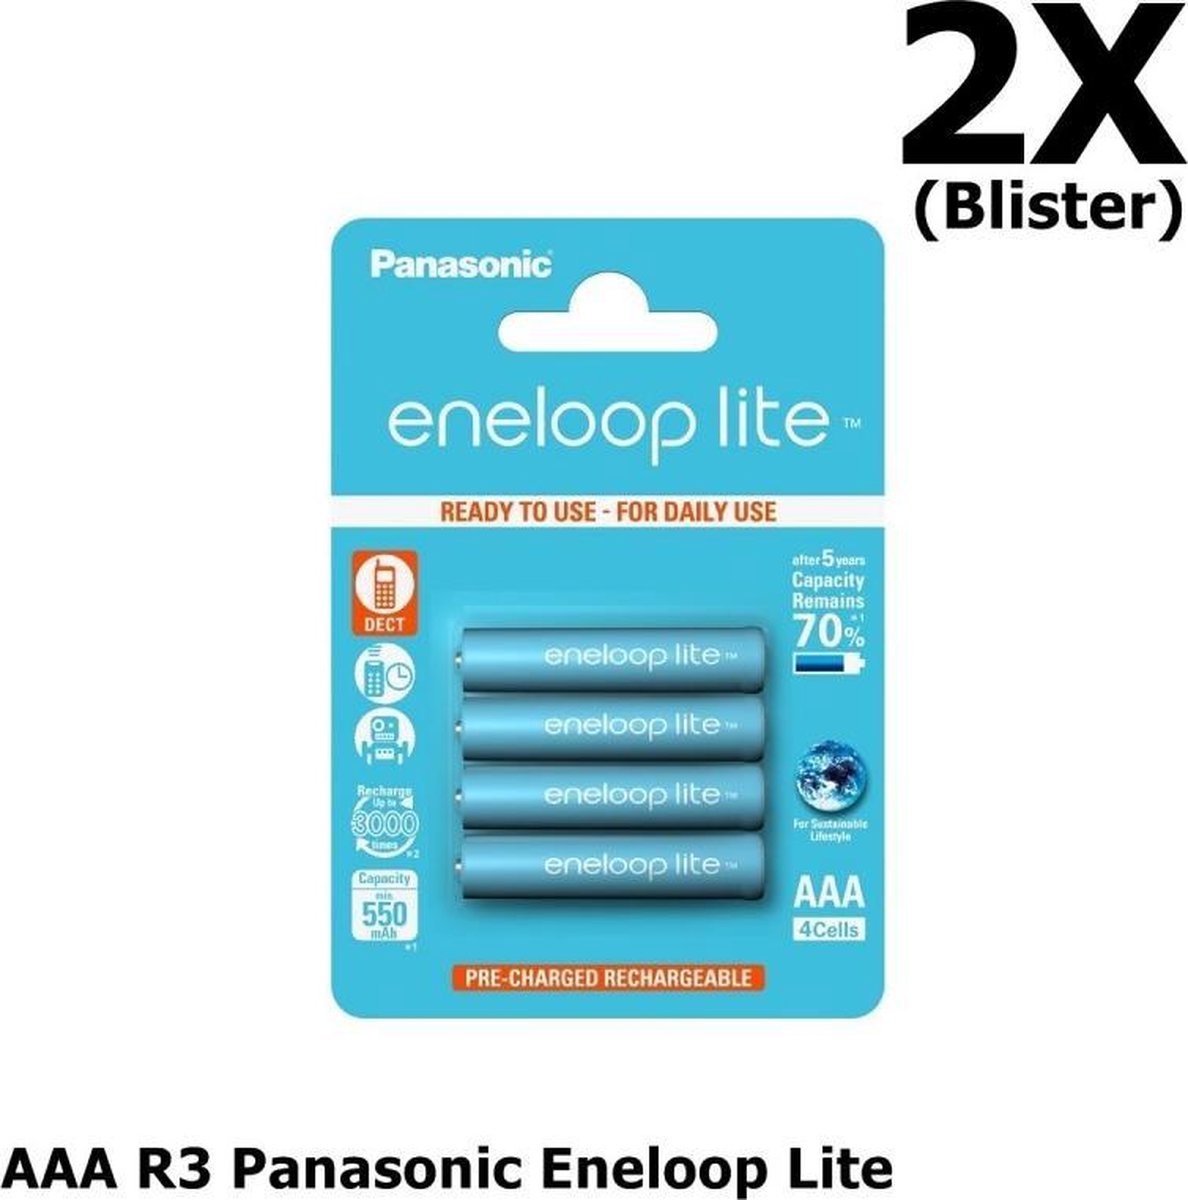 8 Stuks (2 Blisters a 4st) - AAA R3 Panasonic Eneloop Lite 1.2V 550mAh Oplaadbare Batterijen - Speciaal voor dect telefoons, Tot 3000 laadcycli - Blisterverpakking